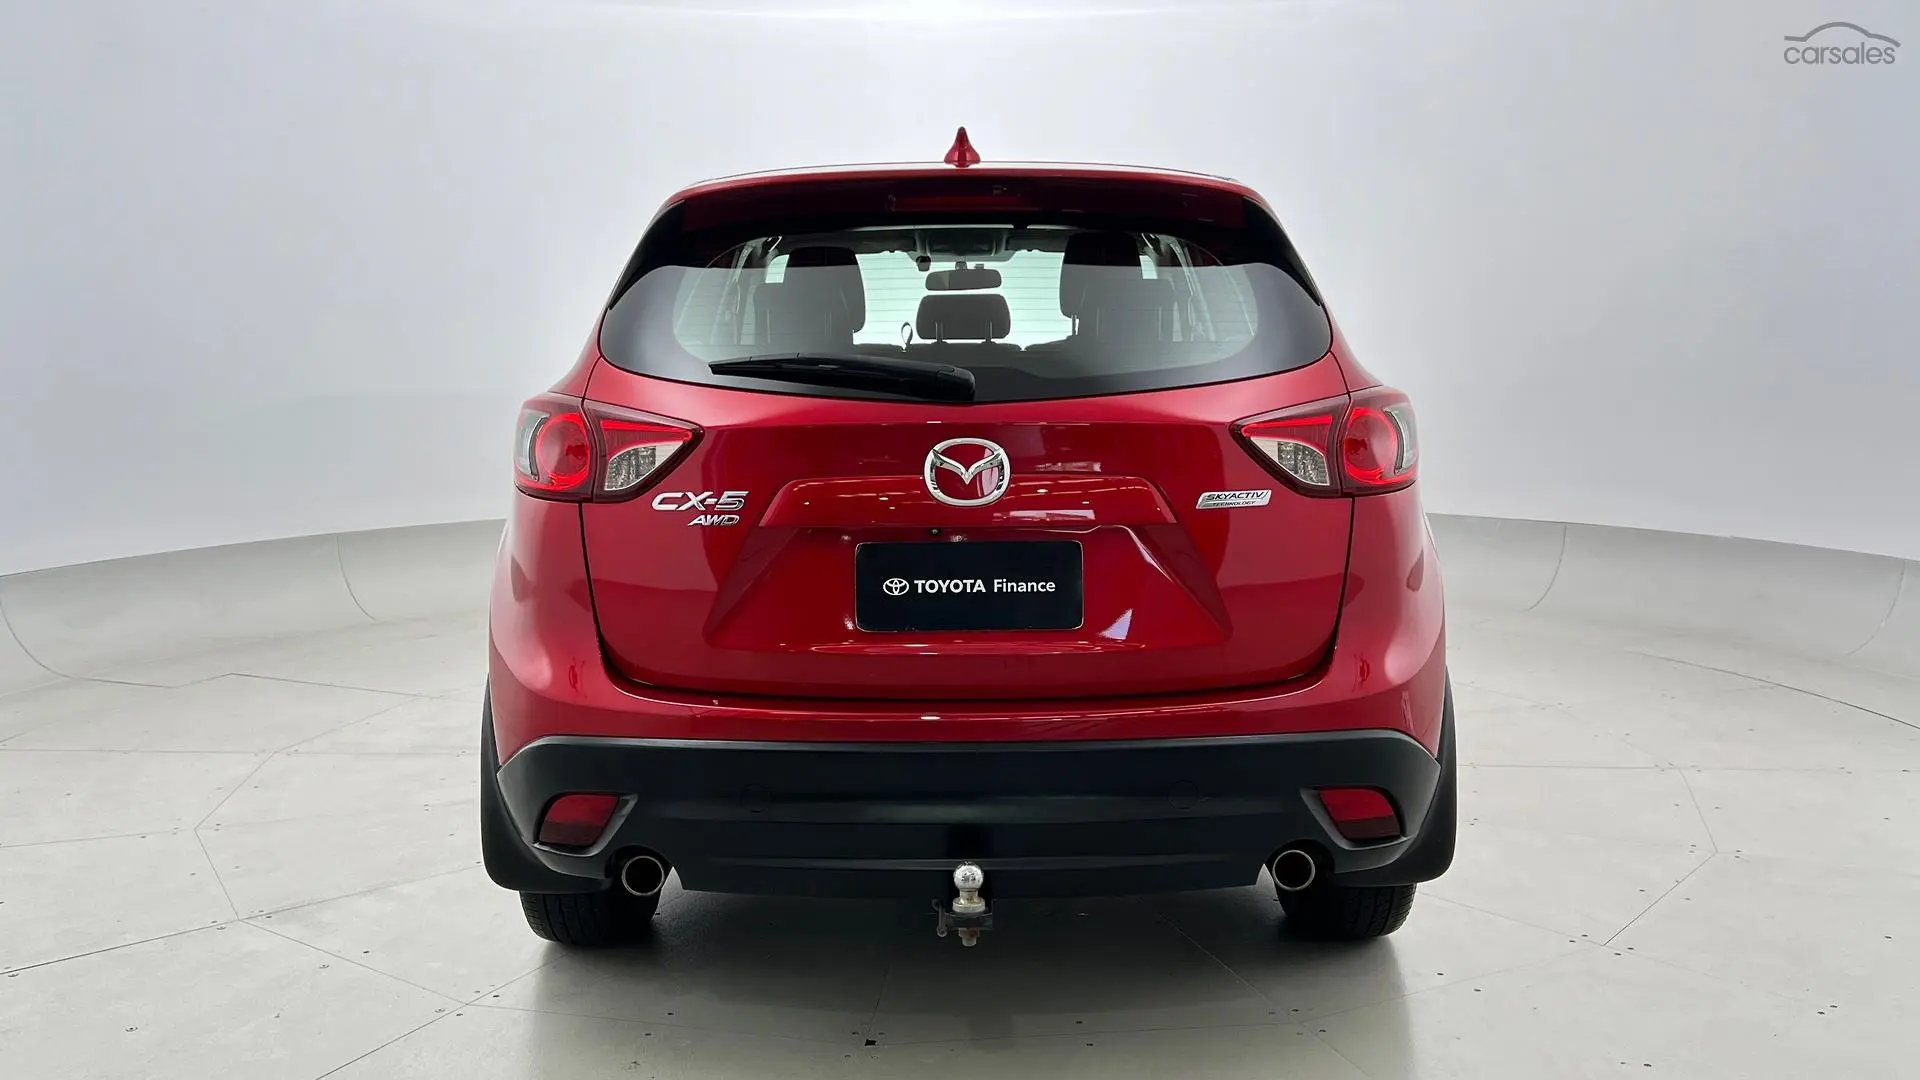 2014 Mazda CX-5 Image 6